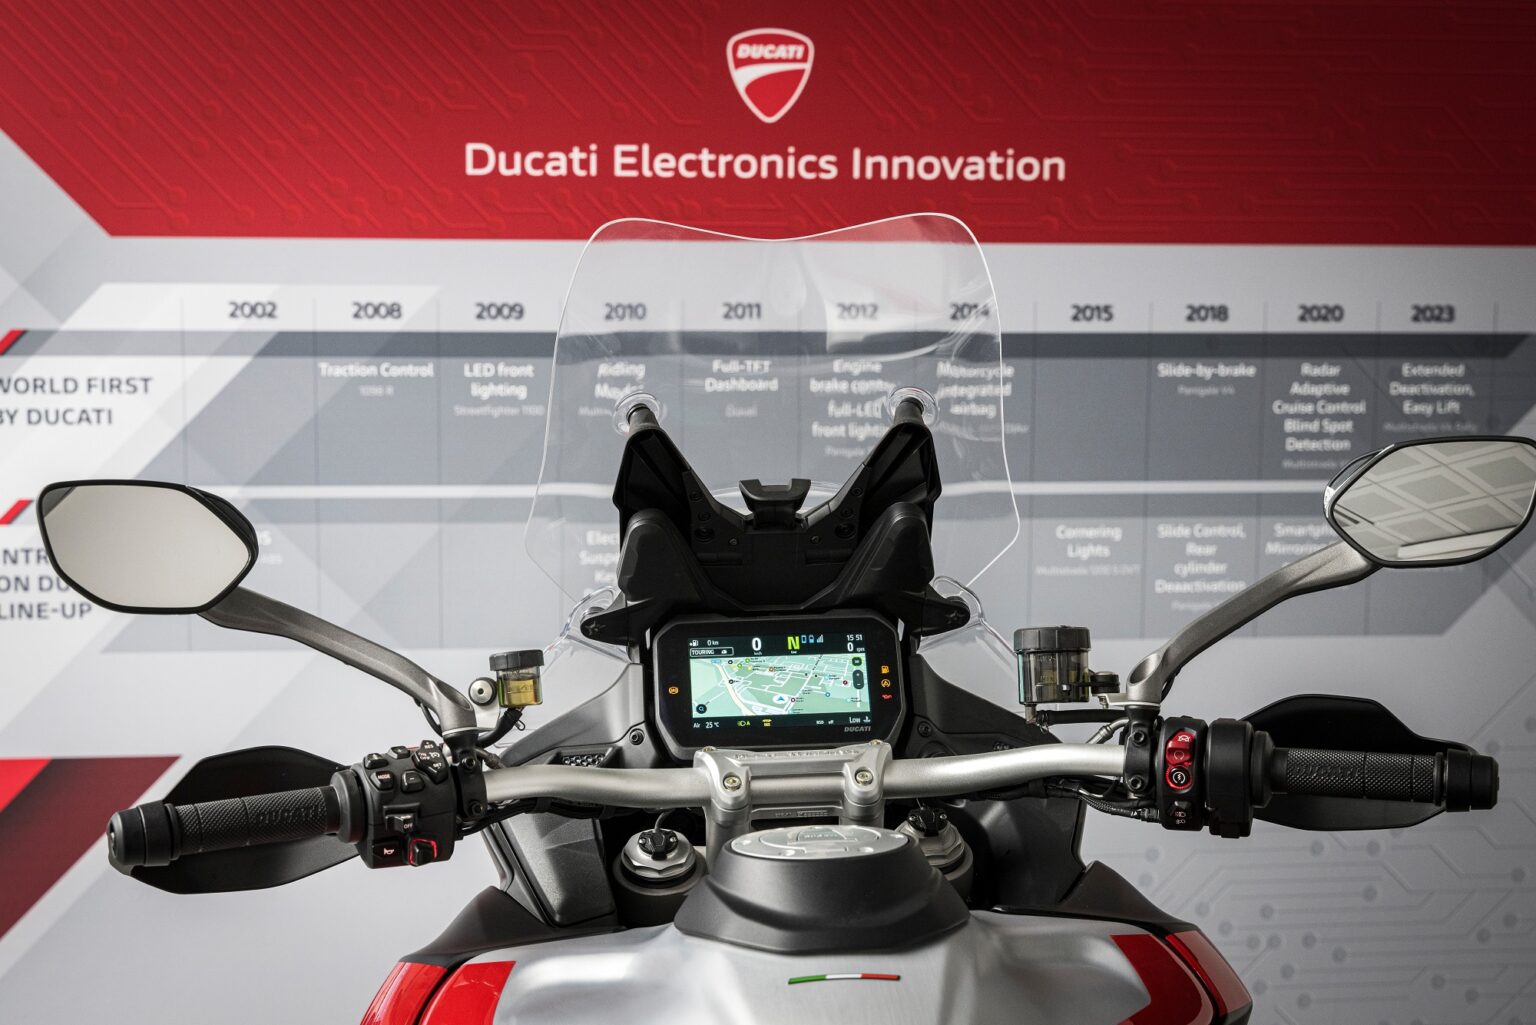 Ηλεκτρονική καινοτομία, The Ducati way